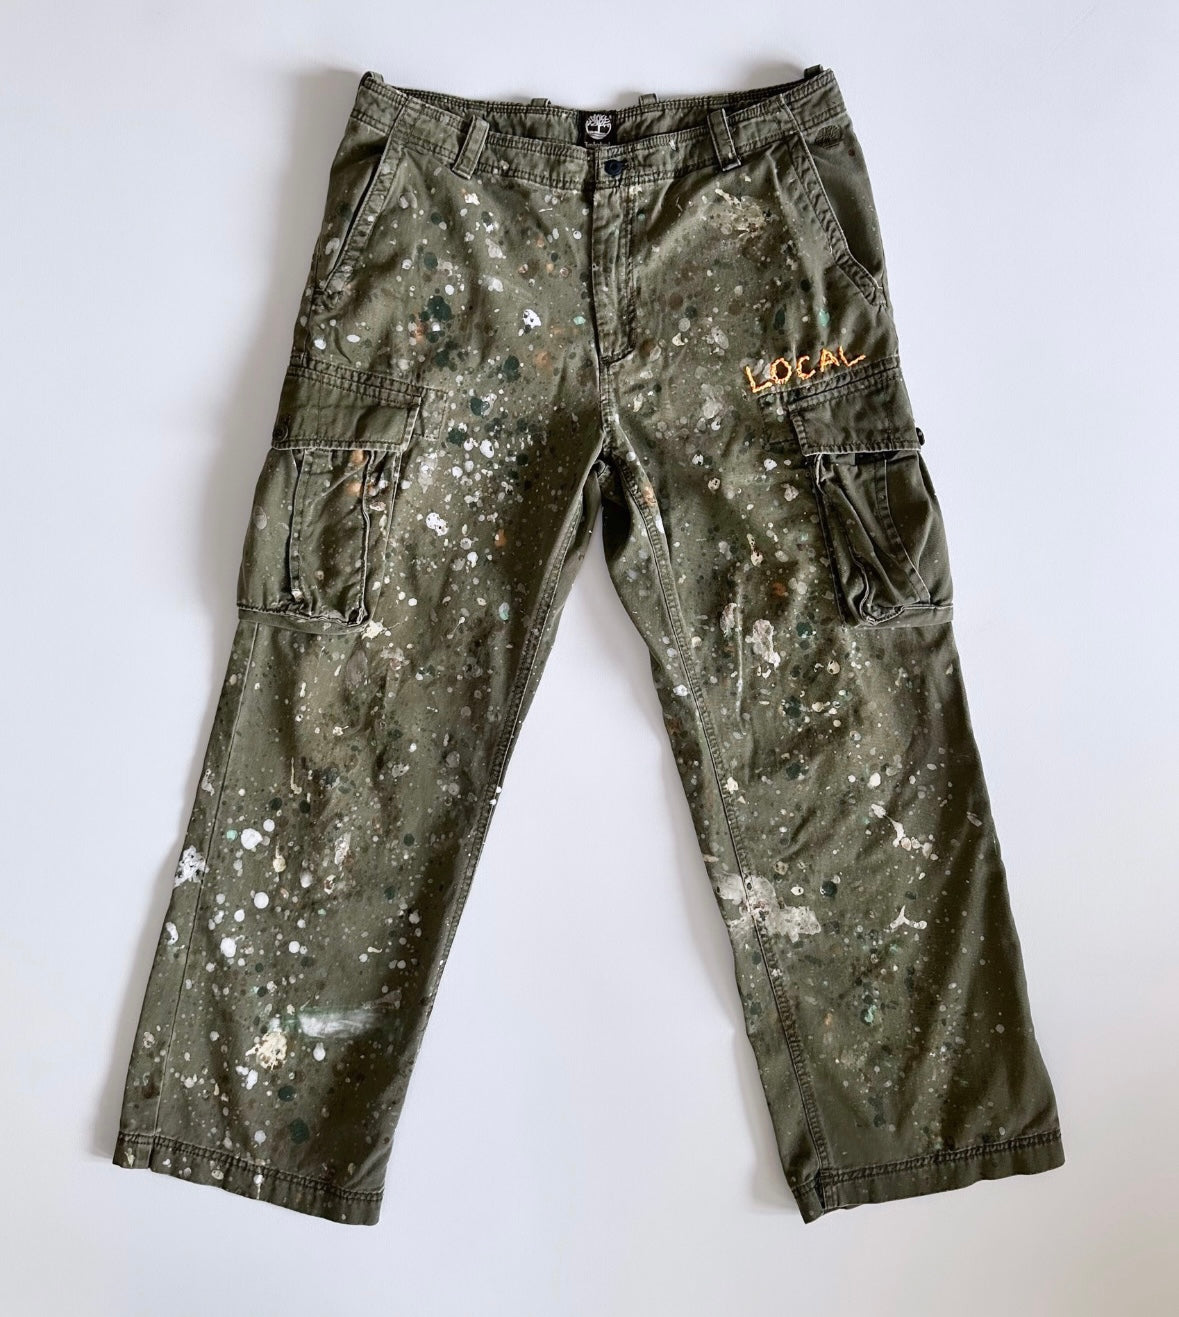 1 of 1 Vintage Olive Green Timberland Splatter Cargo Pants